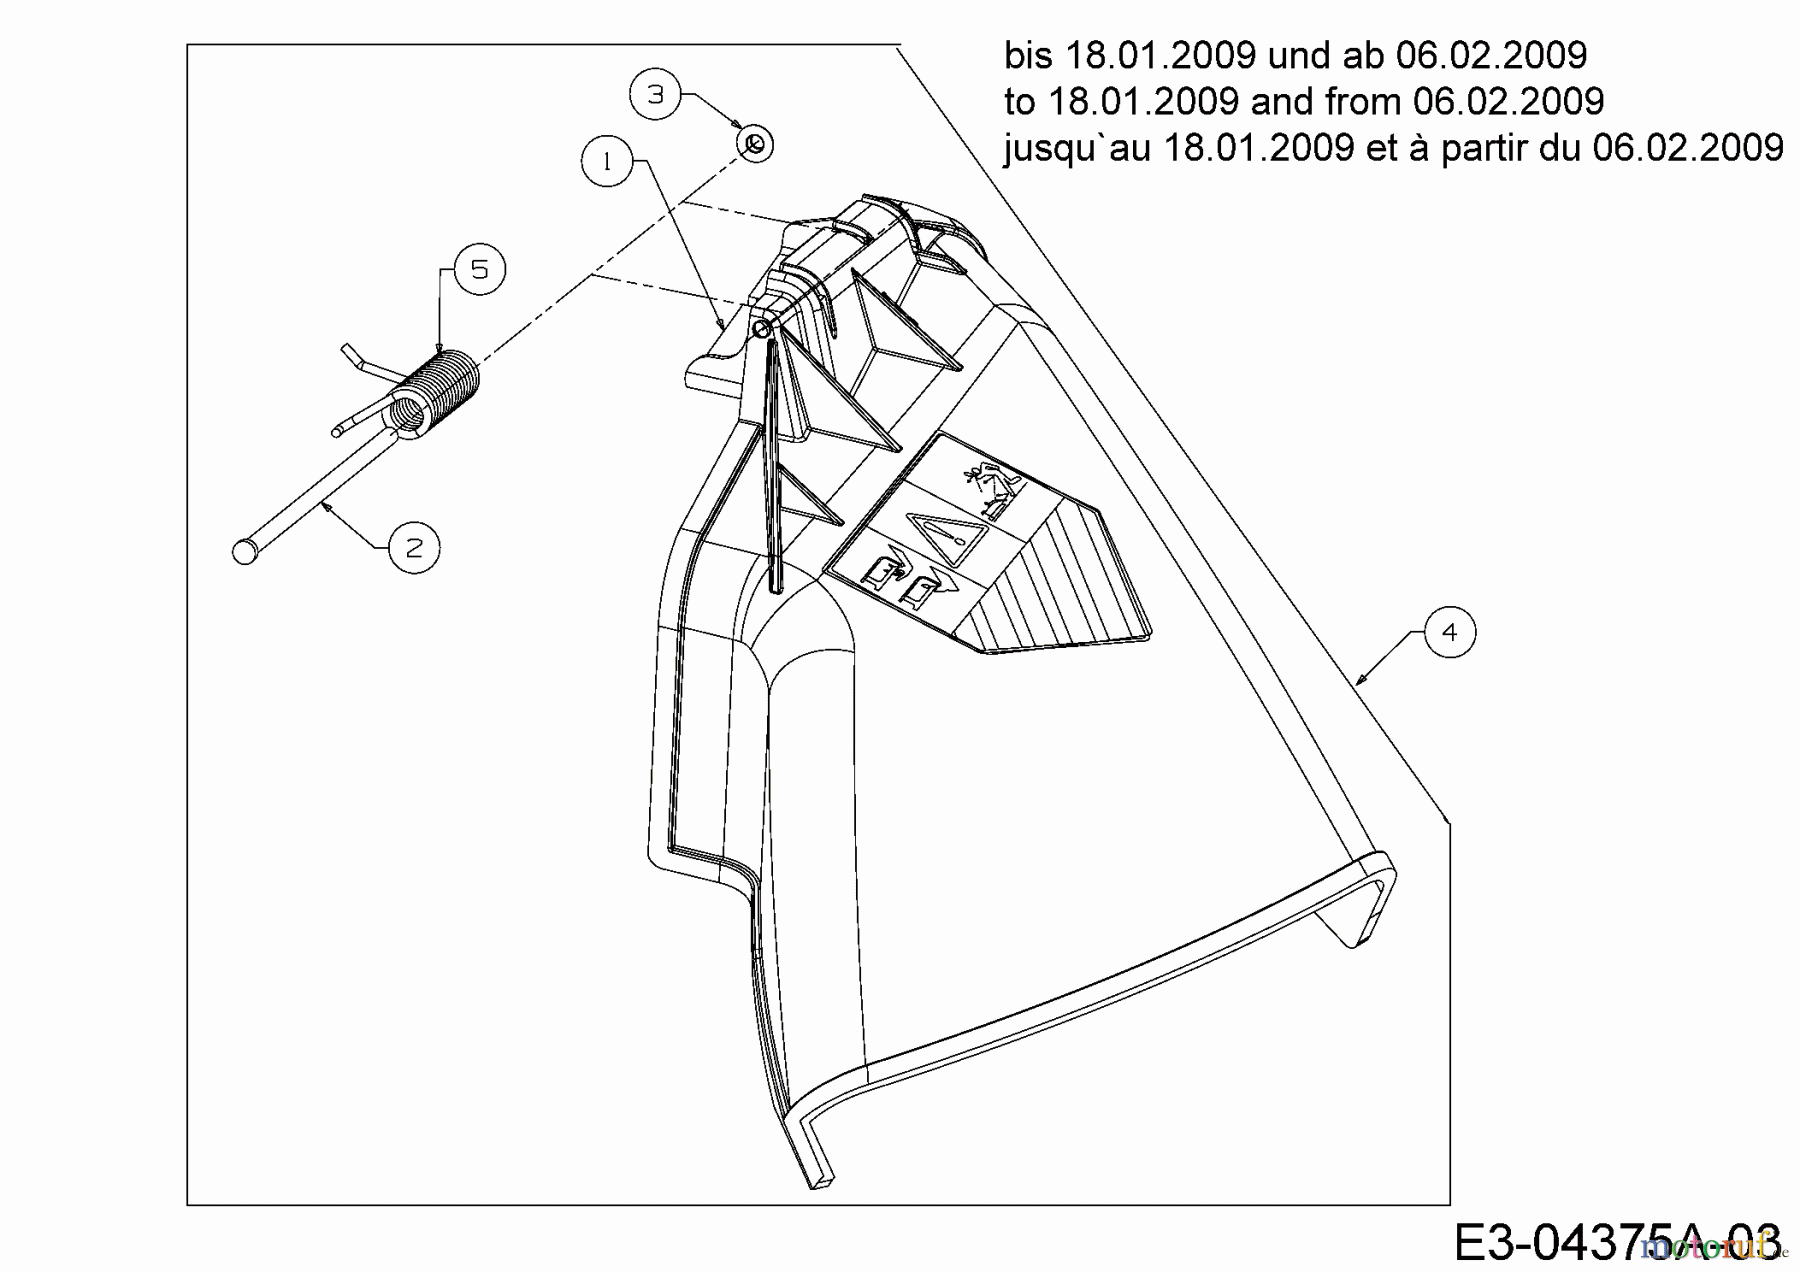  Staub Rasentraktoren SAEL 108/15,5 H 13AM79KG632  (2009) Deflektor bis 18.01.2009 und ab 06.02.2009